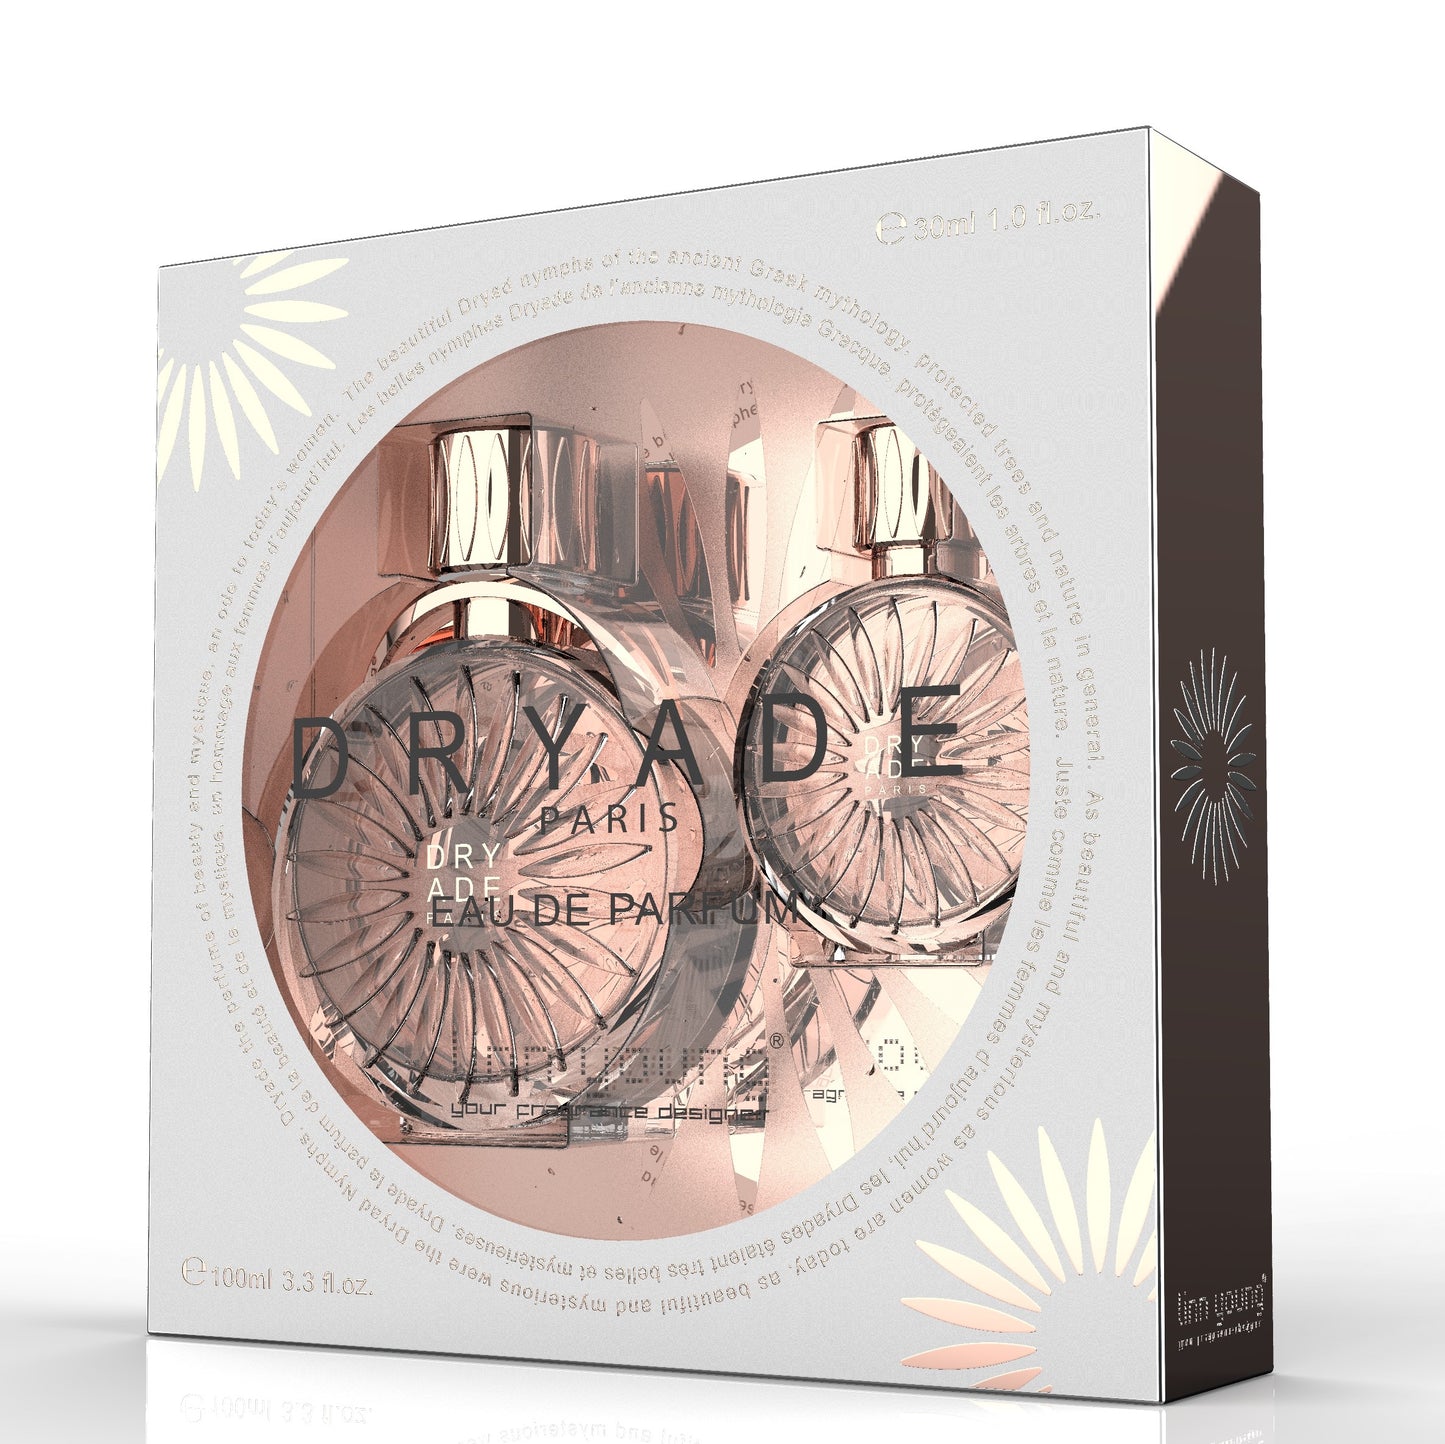 100 ml + 30 ml Eau de Parfume "DRYADE PARIS" Oriental - Puinen Tuoksu Naisille